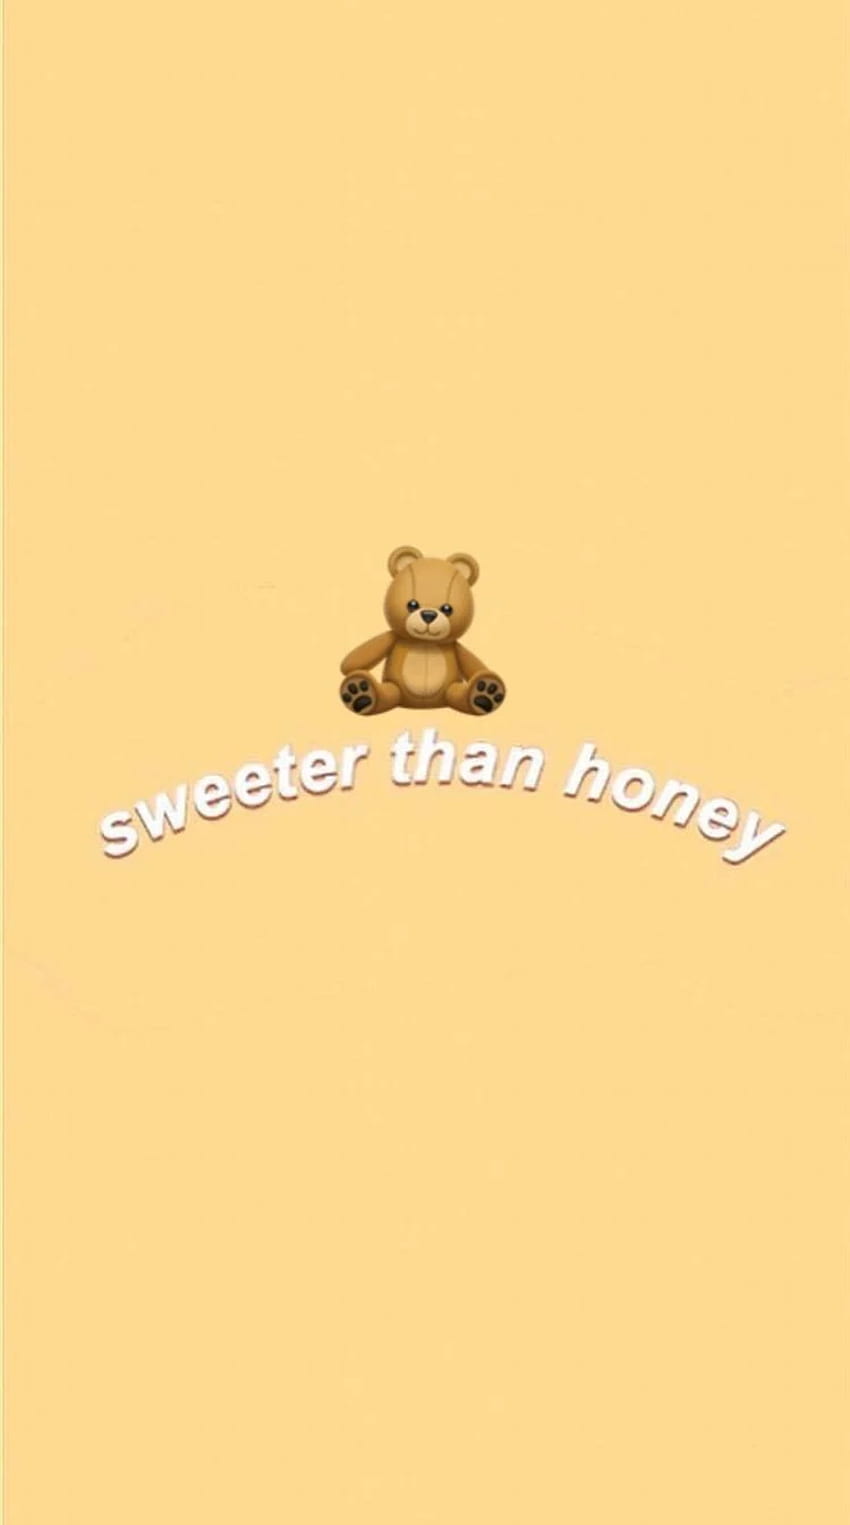 KOYAaa On Hugs Day. Cute Emoji , Cute Love , Cute Cartoon, Cute Teddy Bear Aesthetic HD phone wallpaper